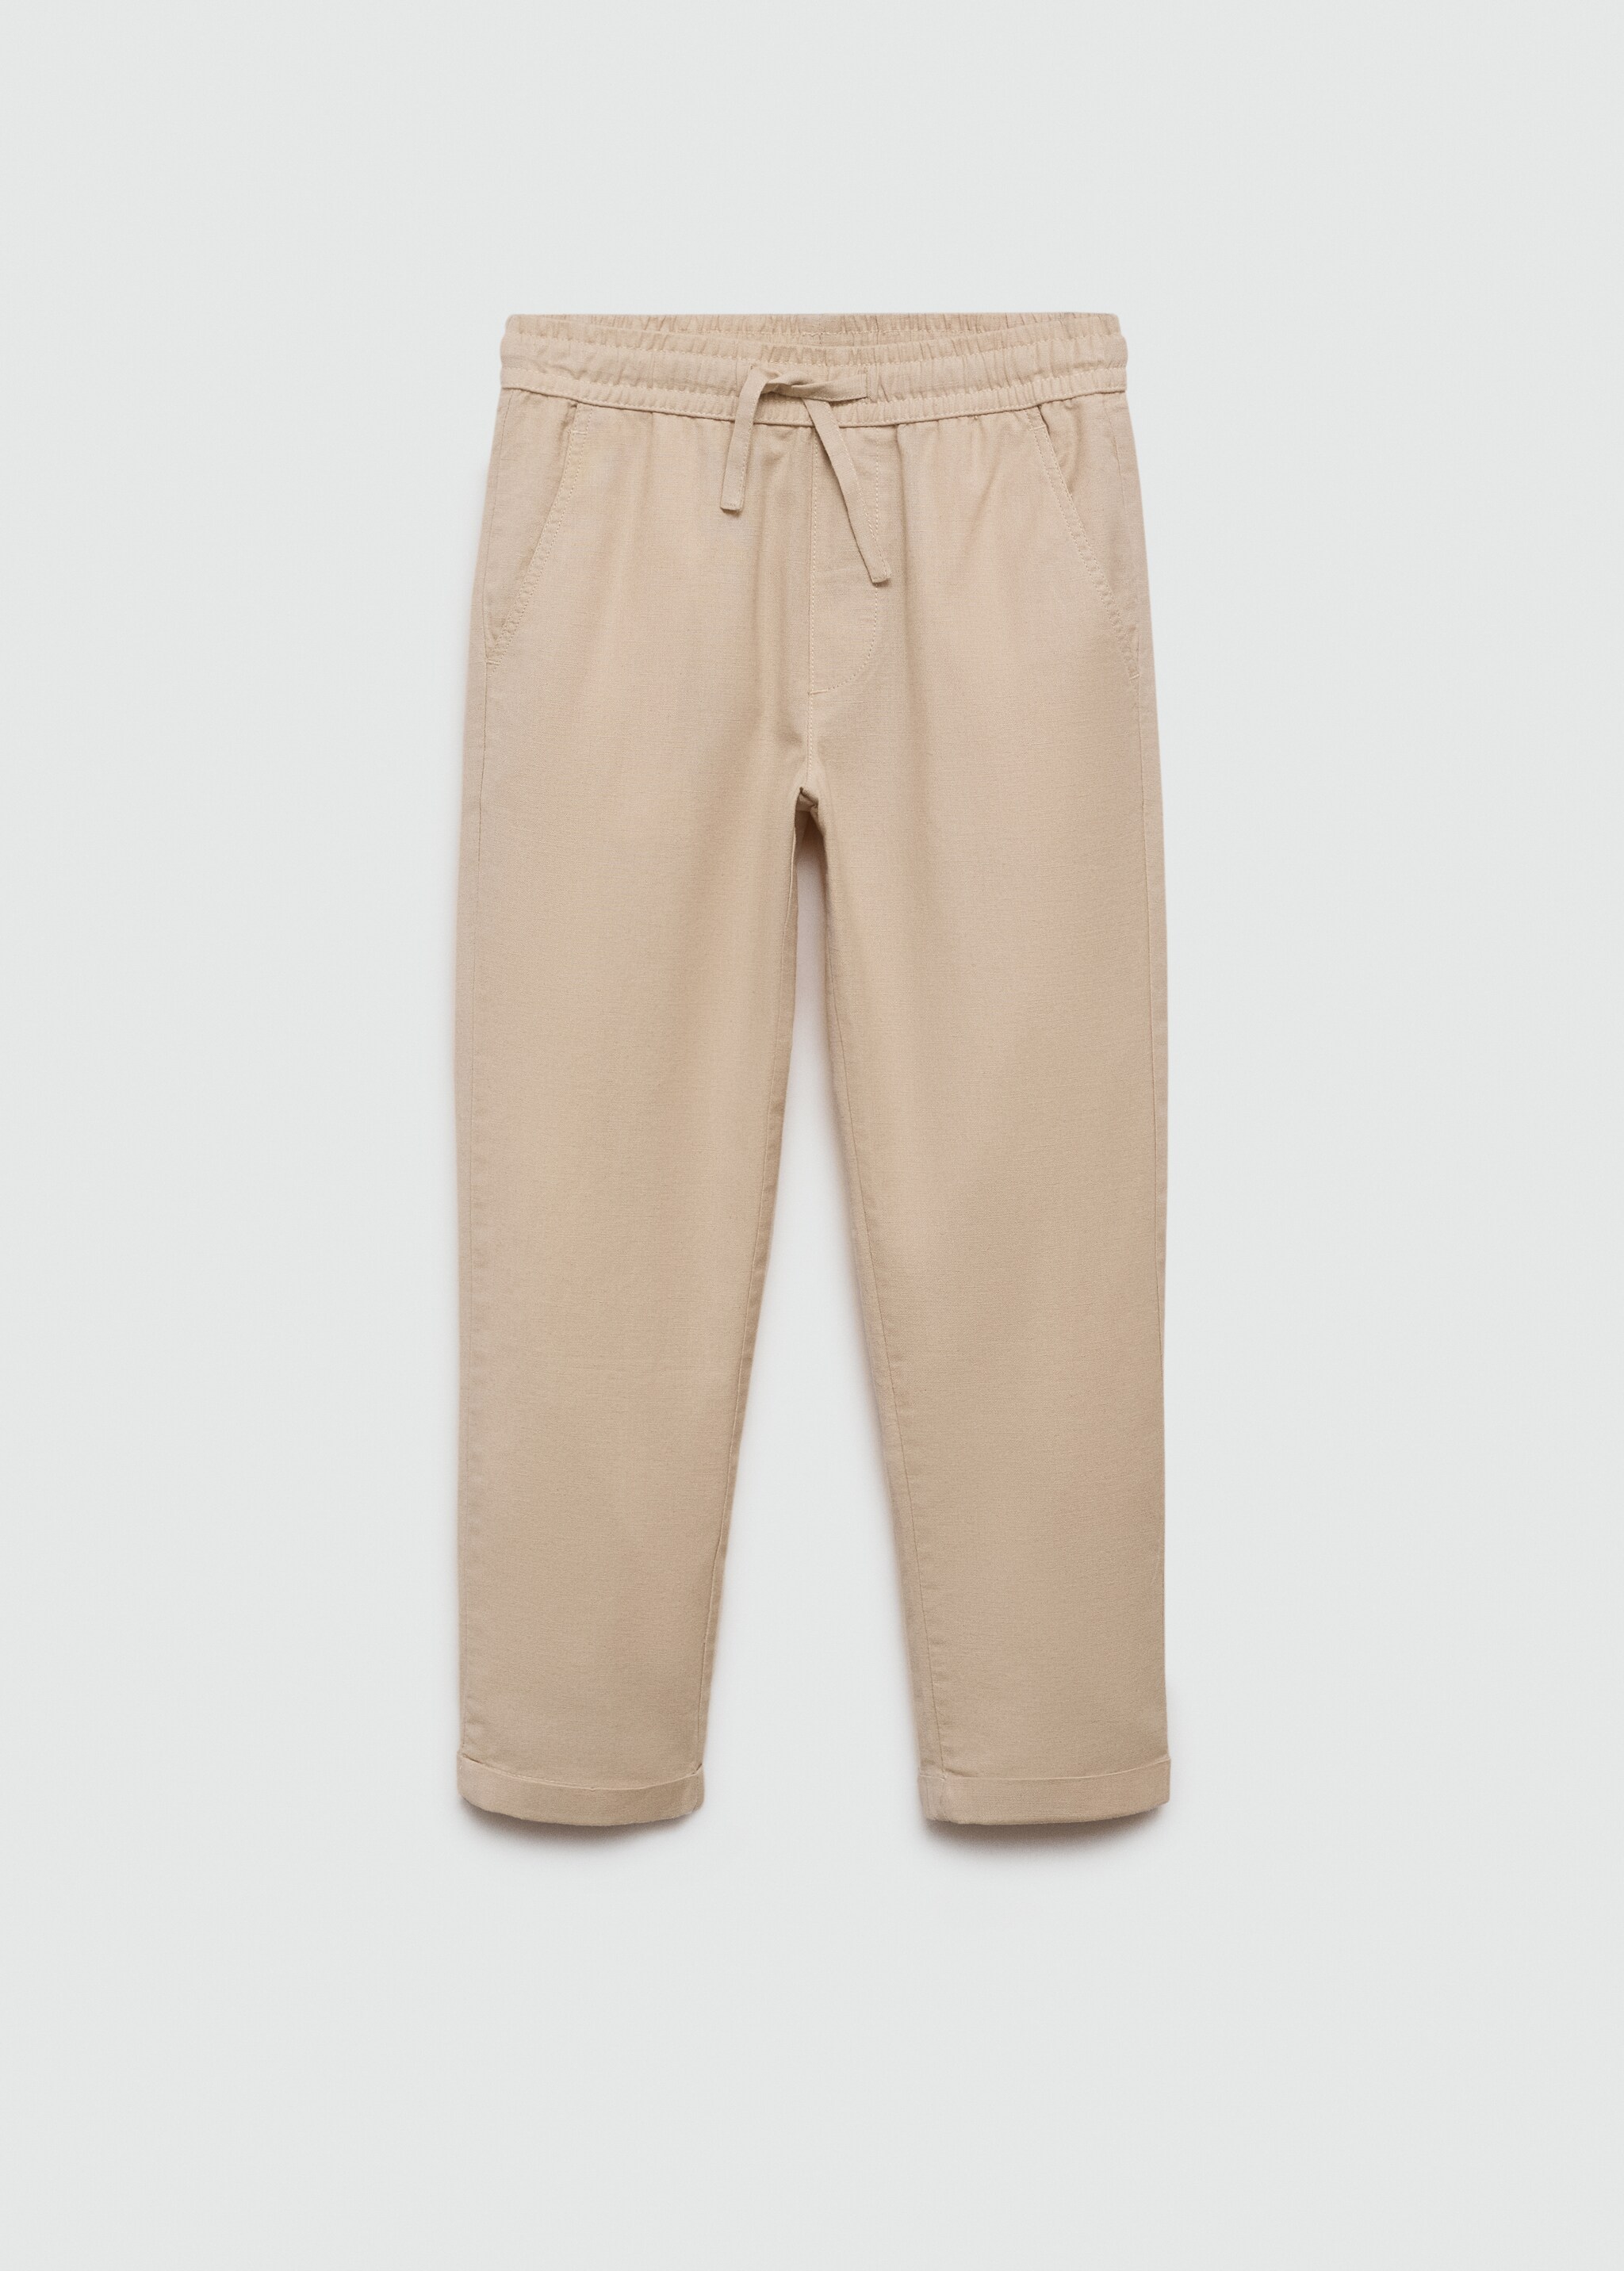 Pantalón lino cintura elástica - Artículo sin modelo